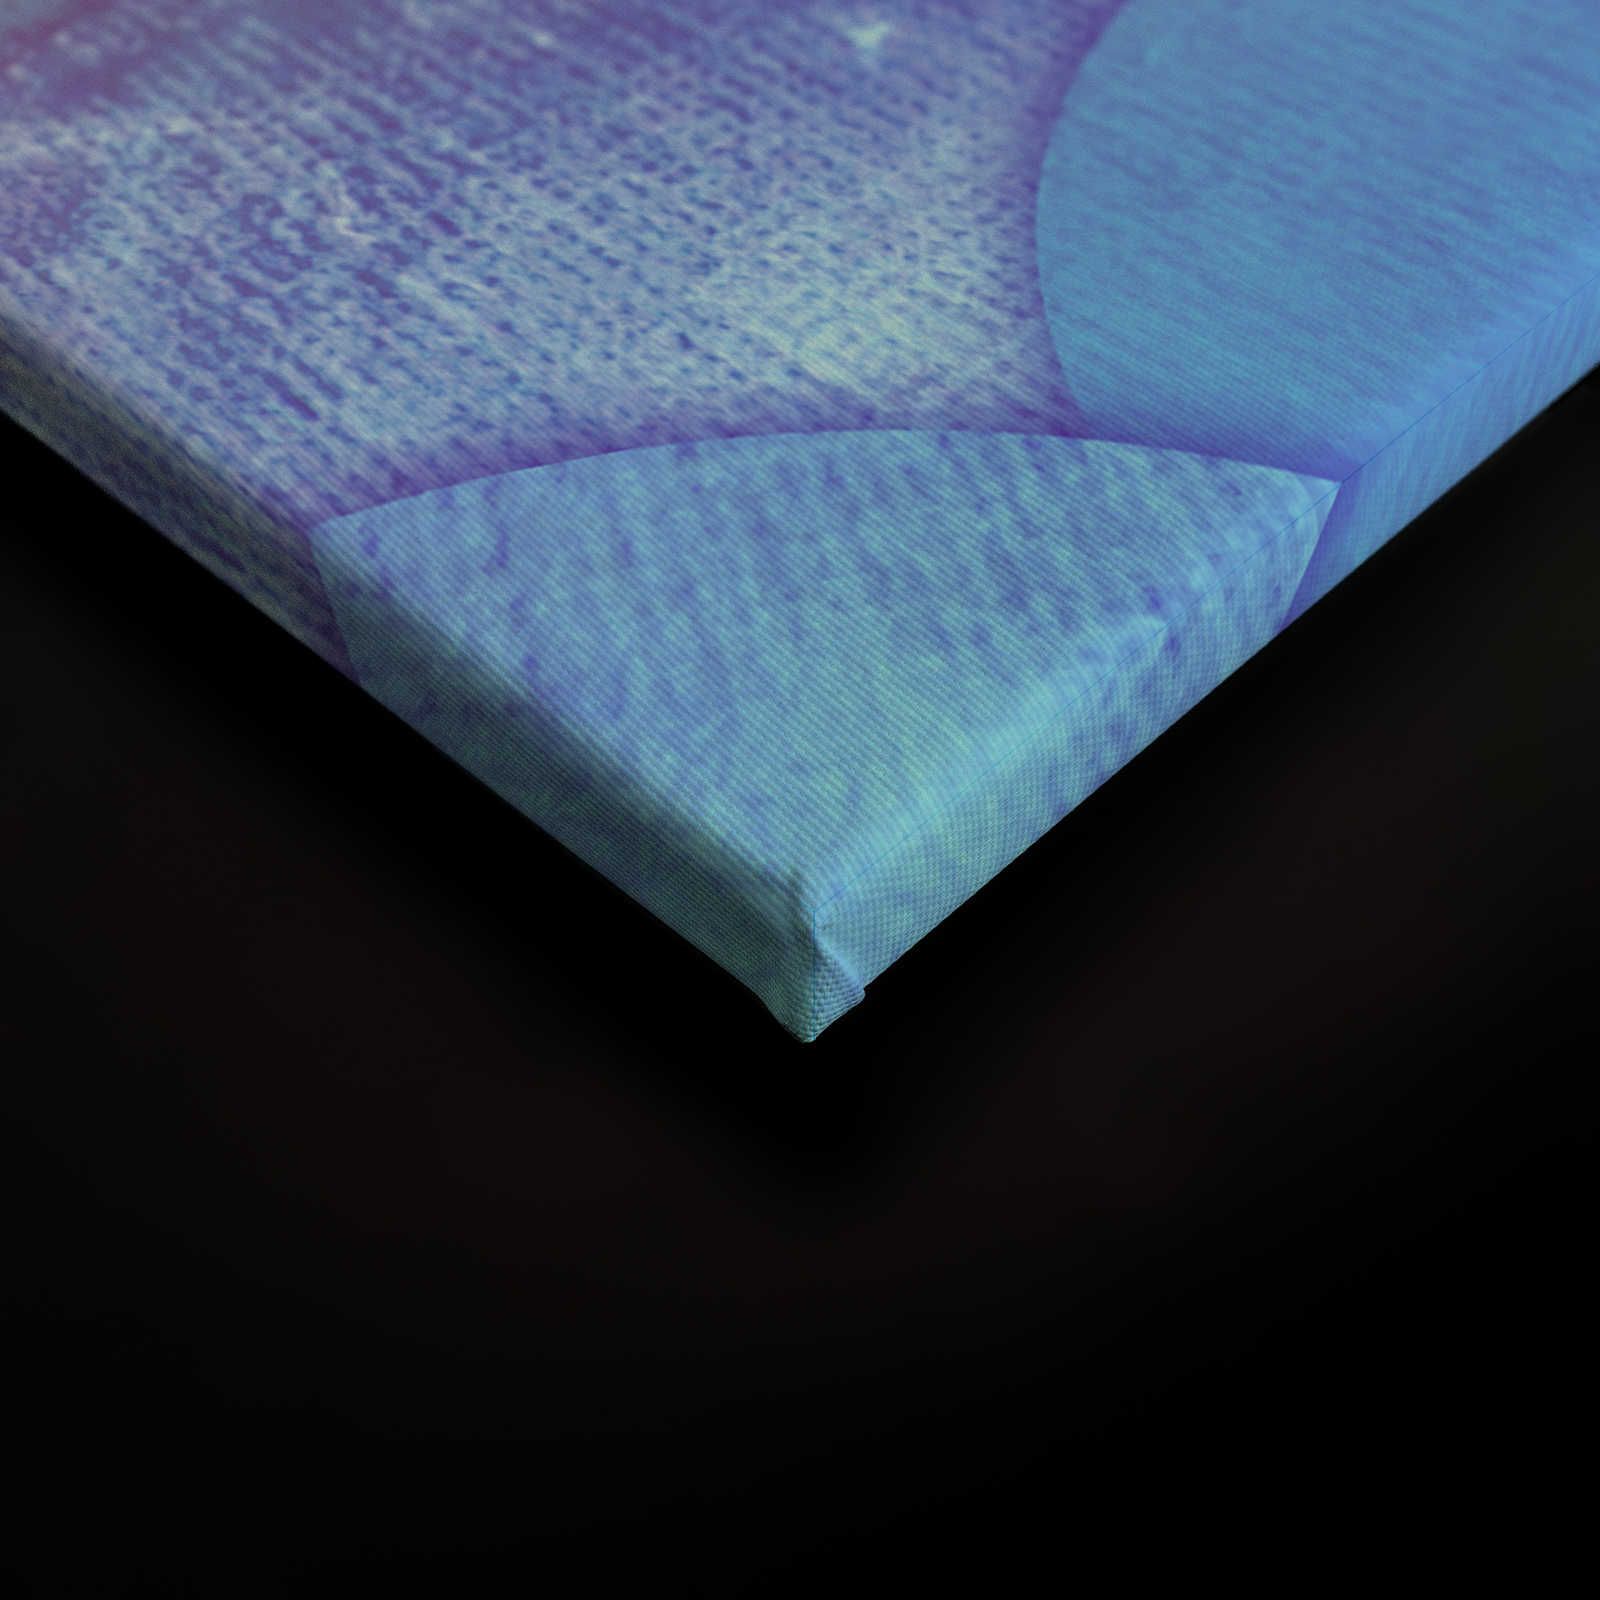             Leinwand mit Muster in Fischschuppen-Optik – 90 cm x 60 cm
        